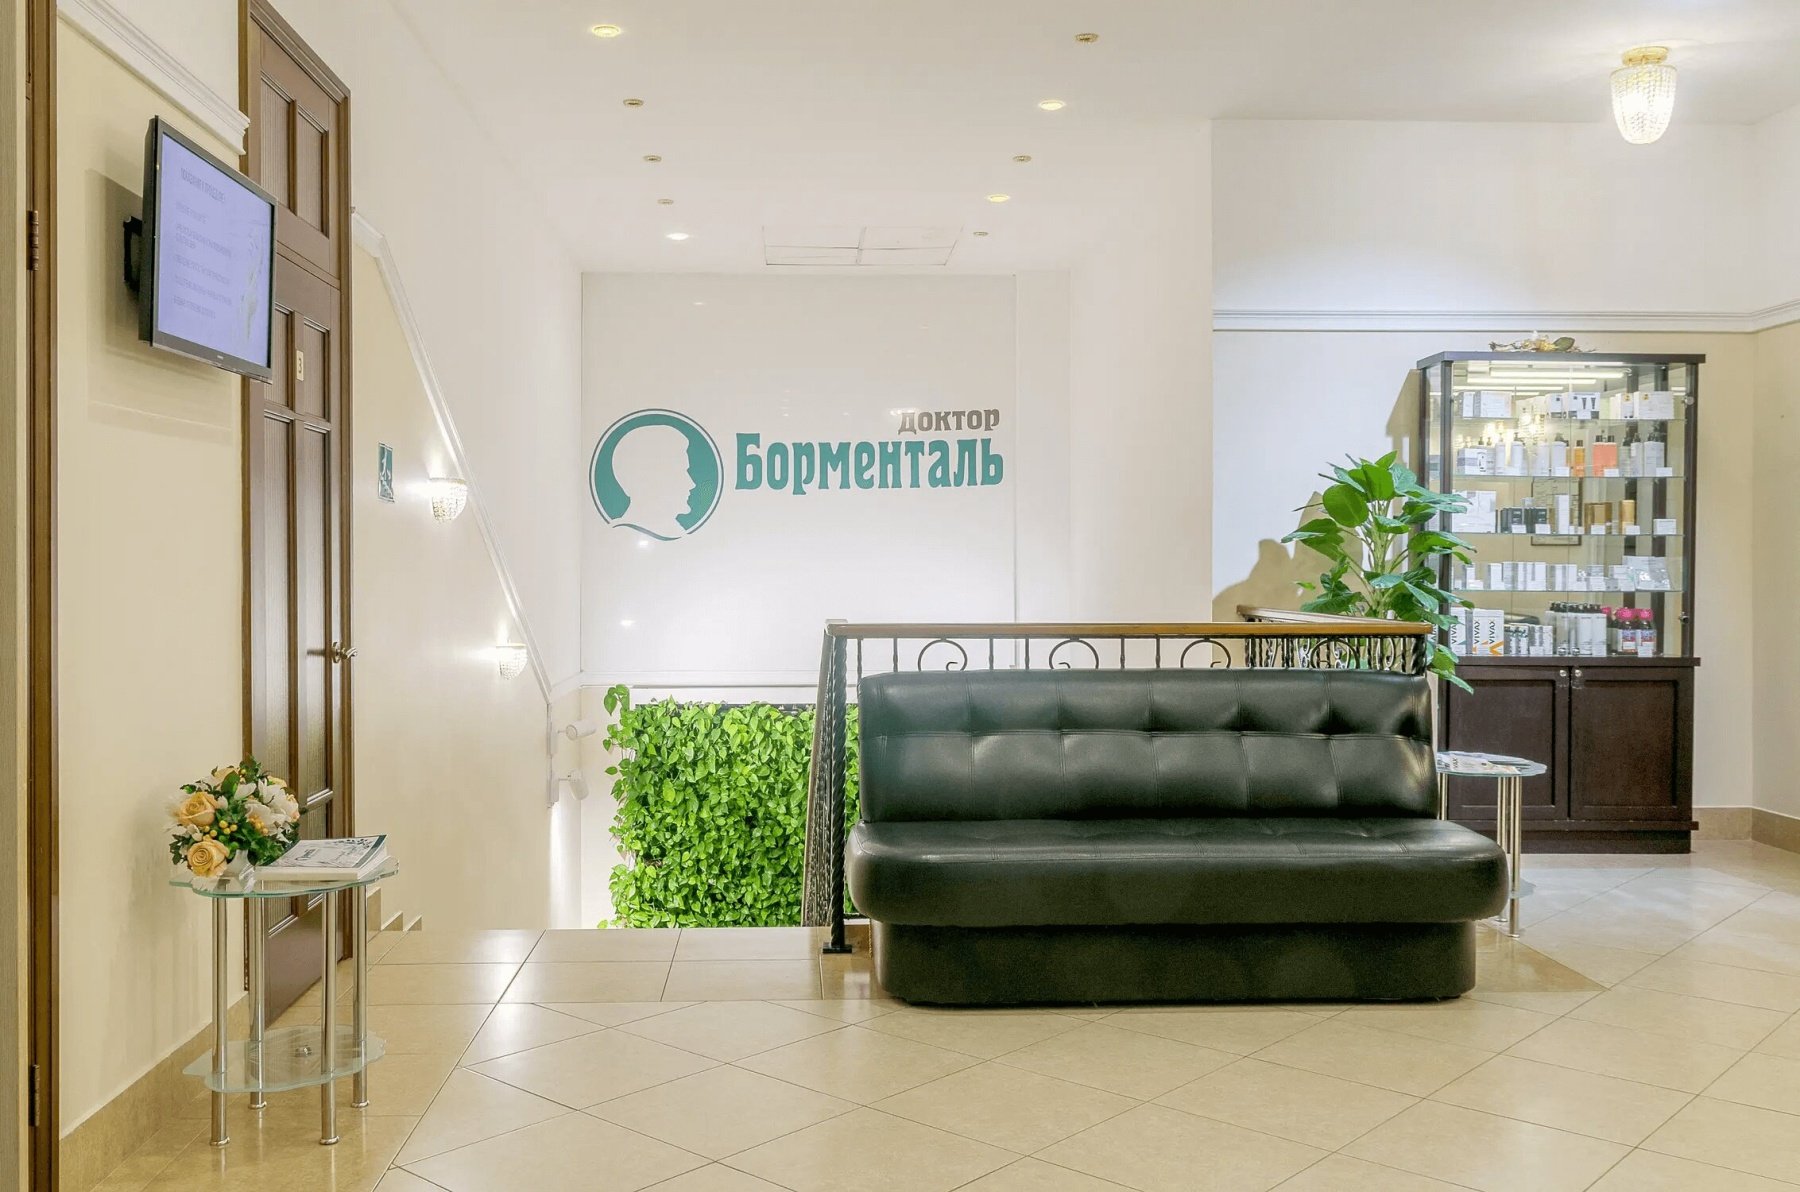 История центра «Доктор Борменталь» в Томске